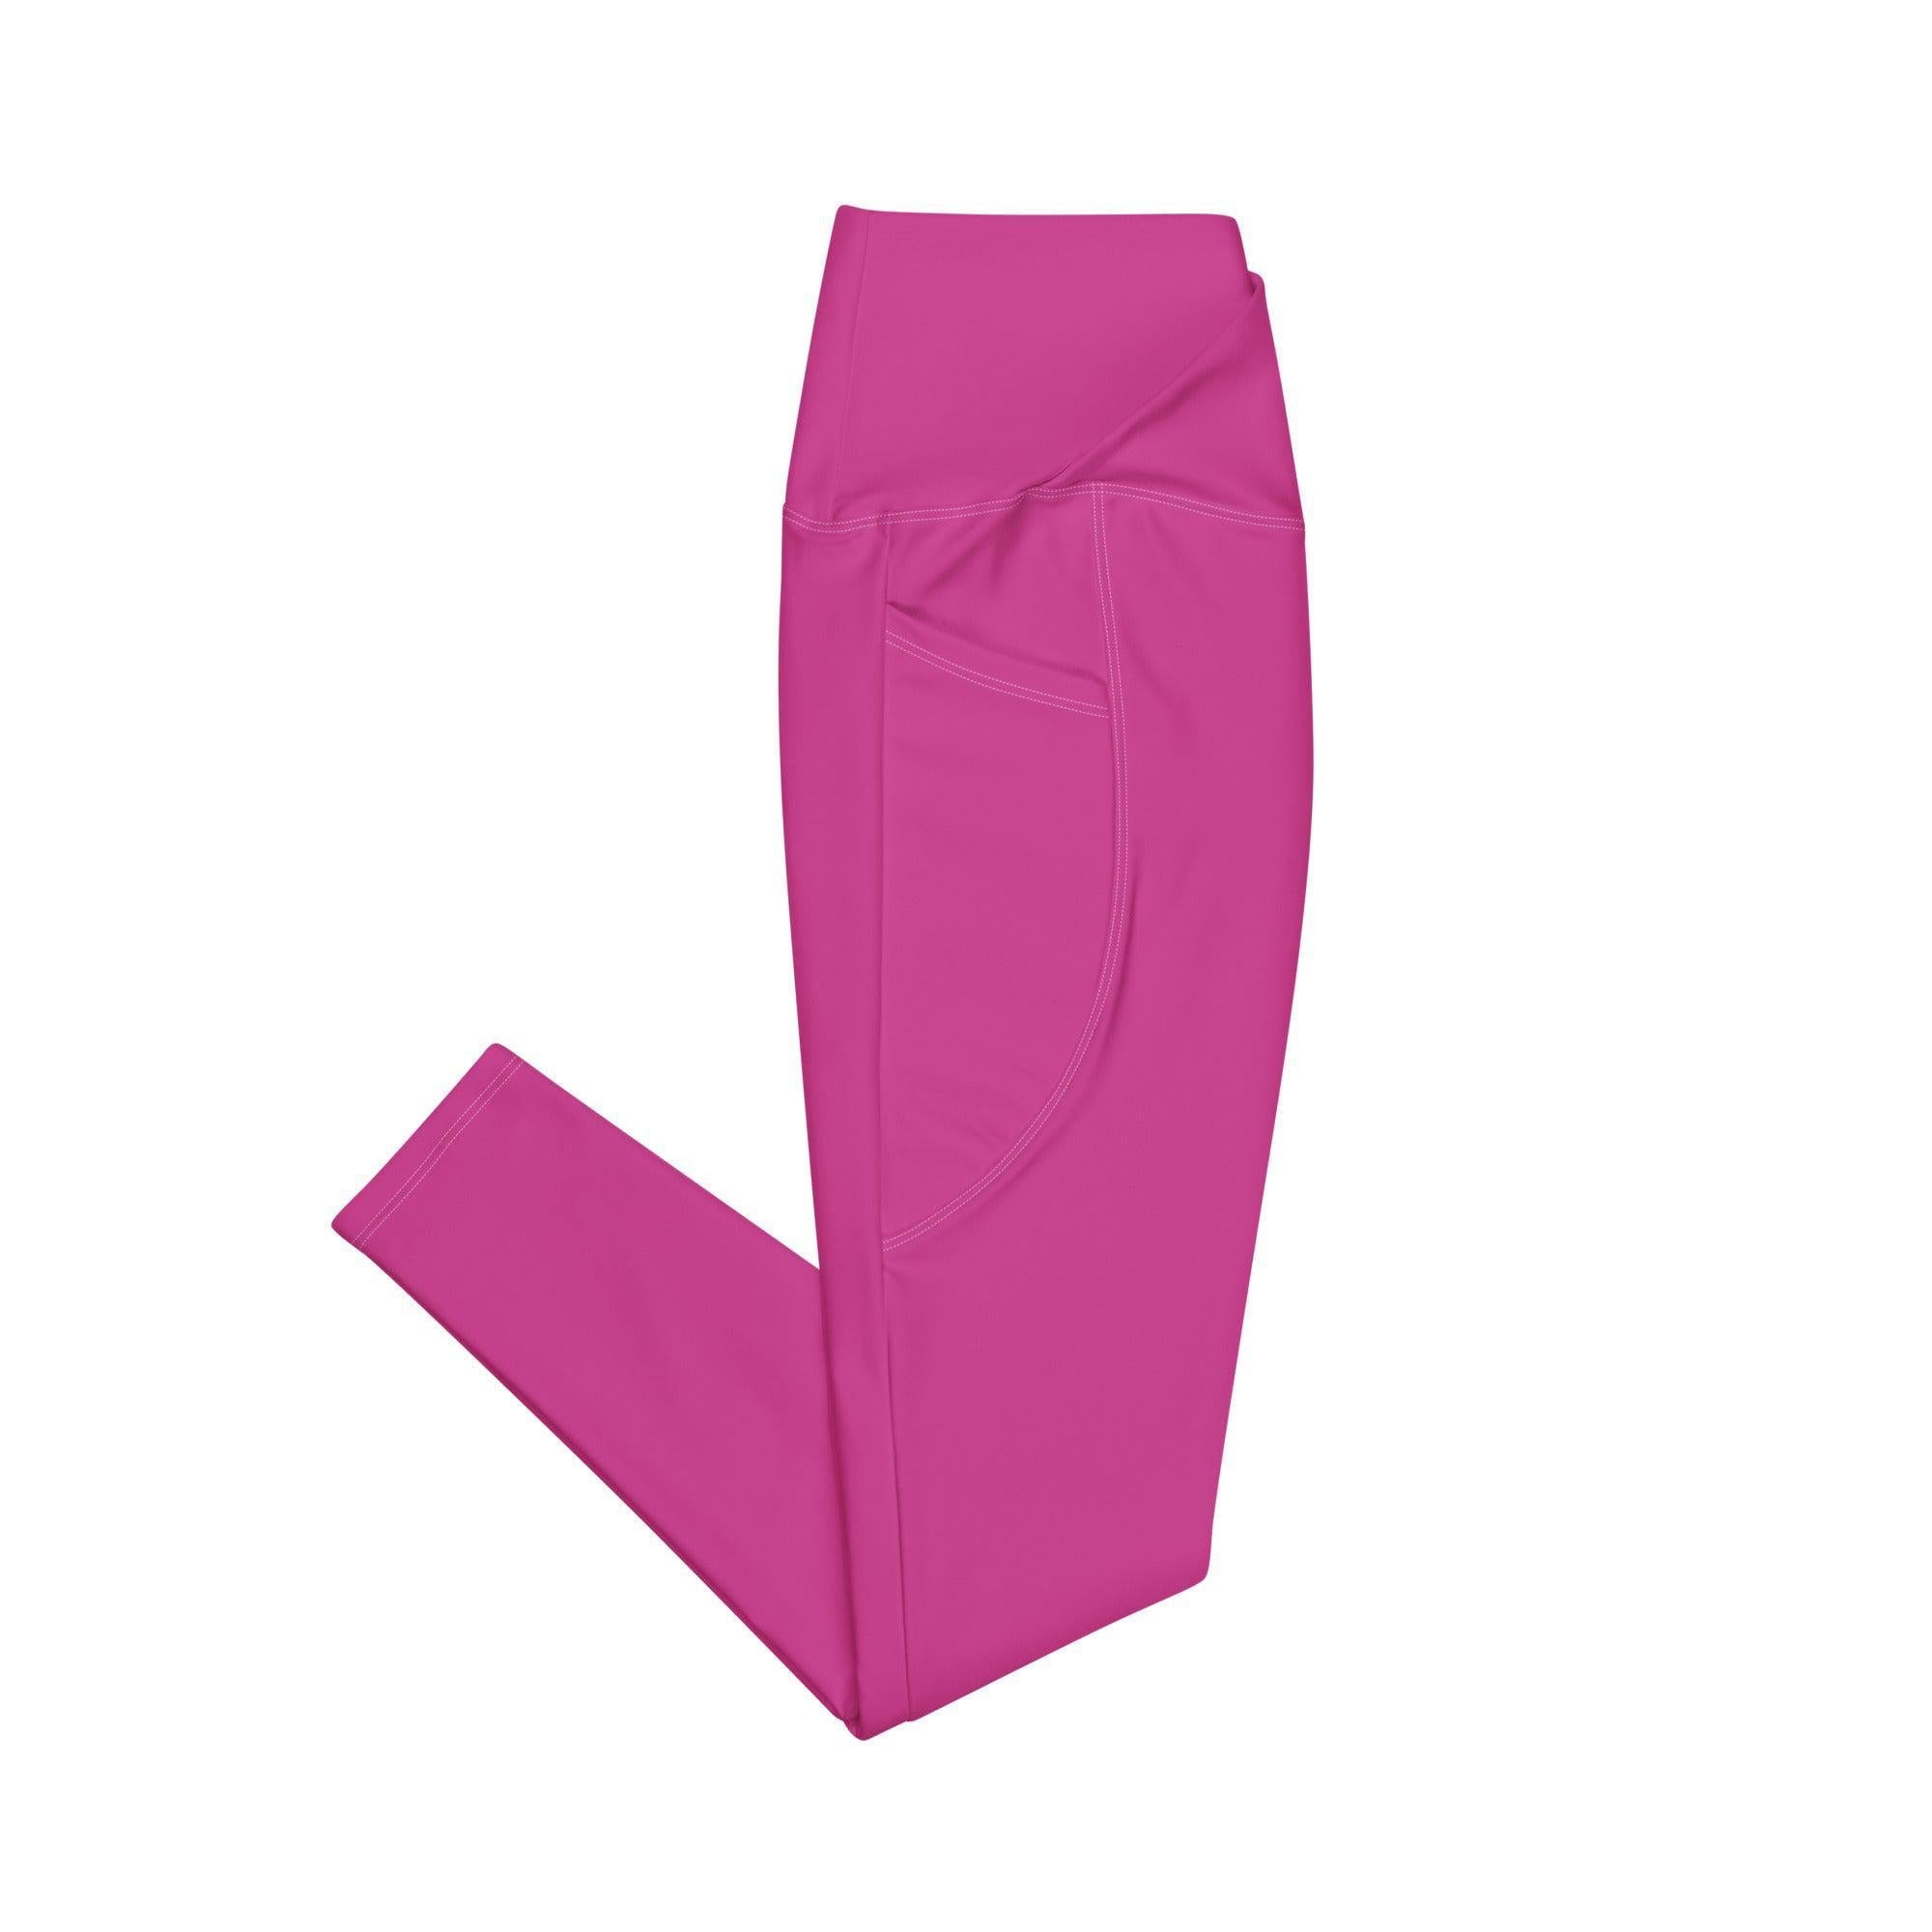 Bunny Pocket Jumper and Skirt Leggings Set Pink